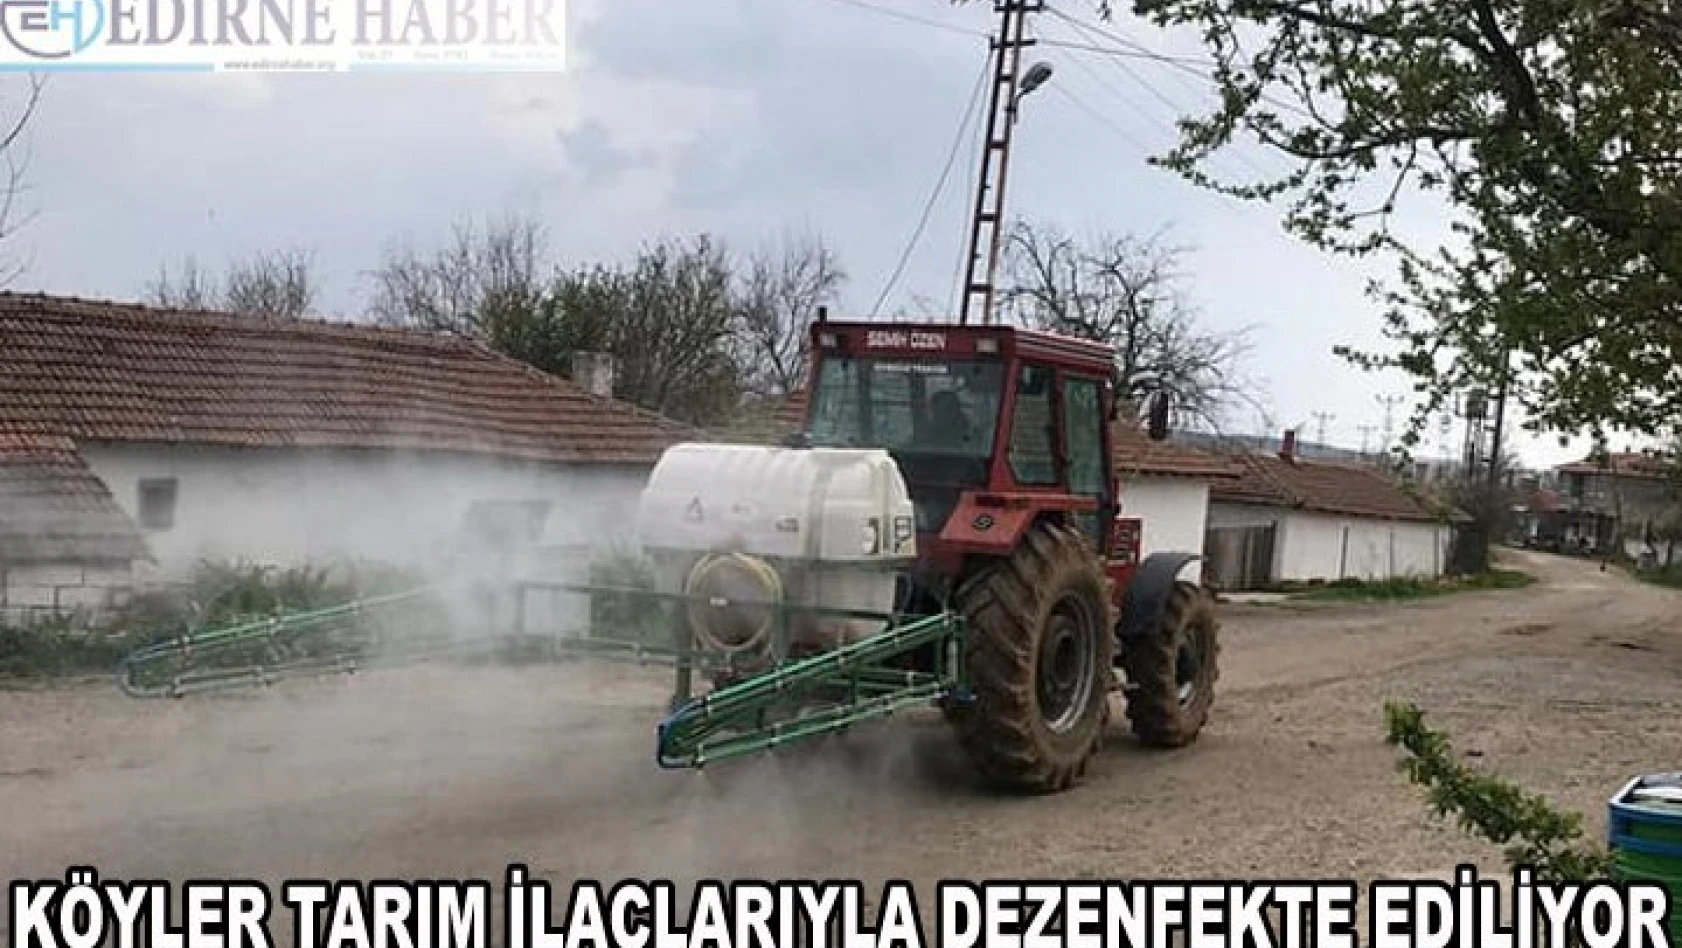 Köyler tarım araçlarıyla dezenfekte ediliyor